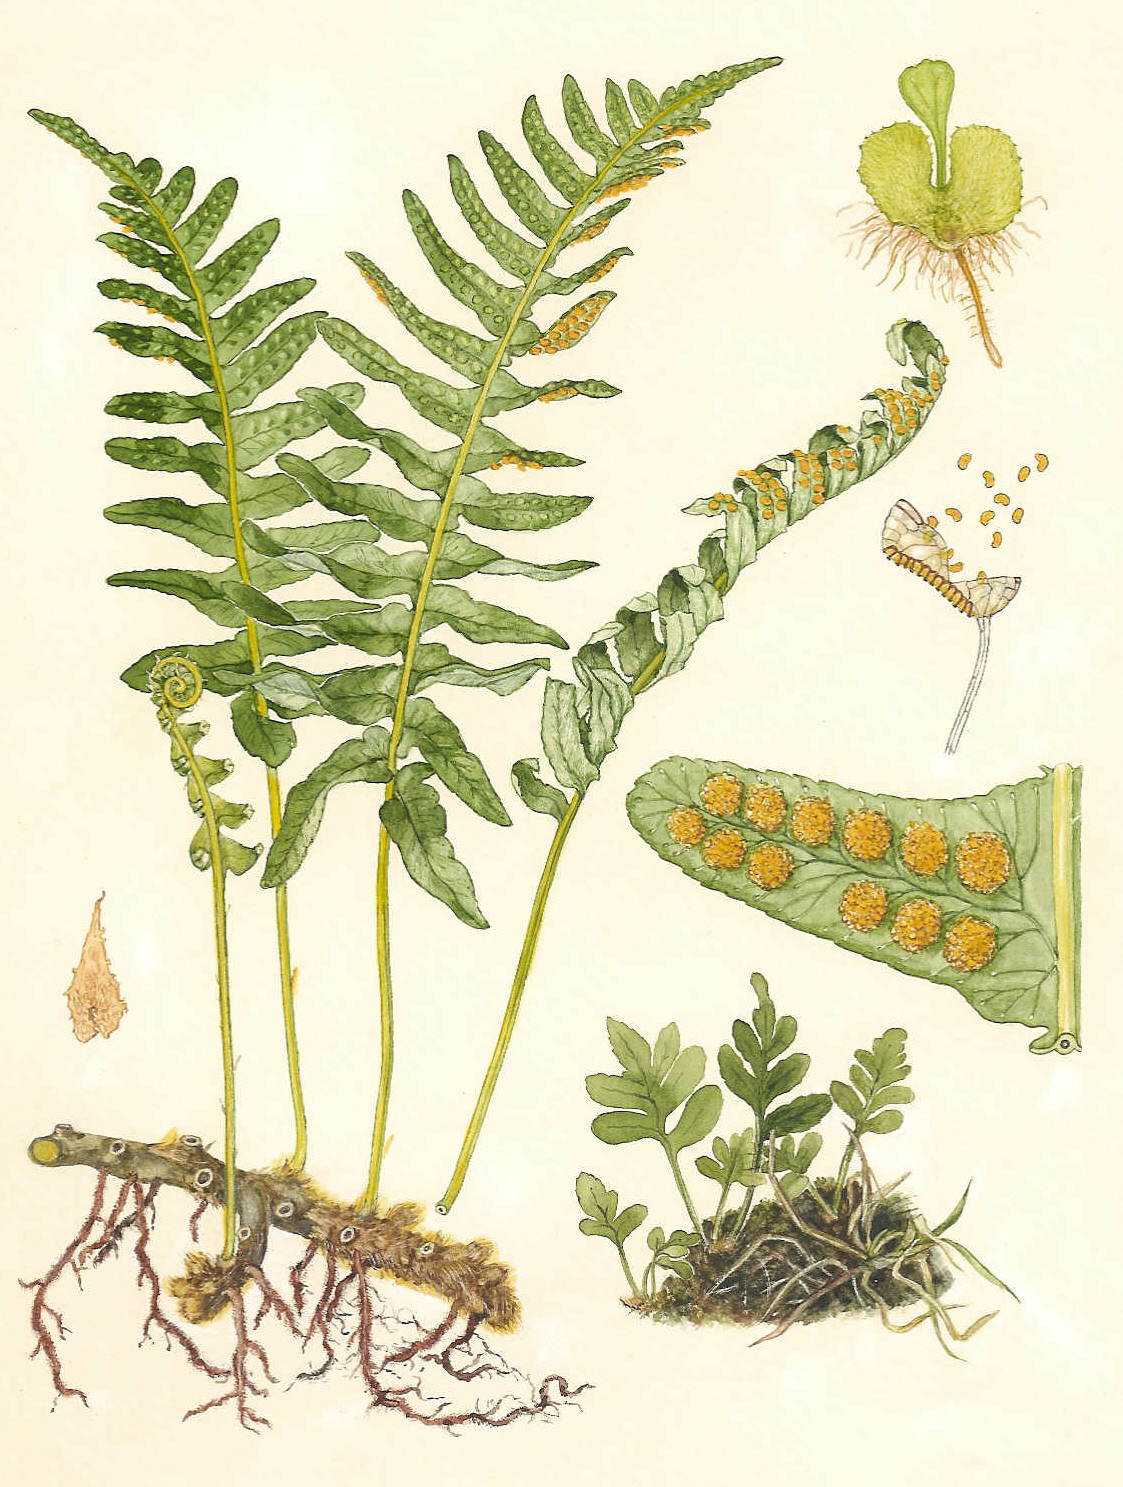 Phlebodium aureum - Wikipedia